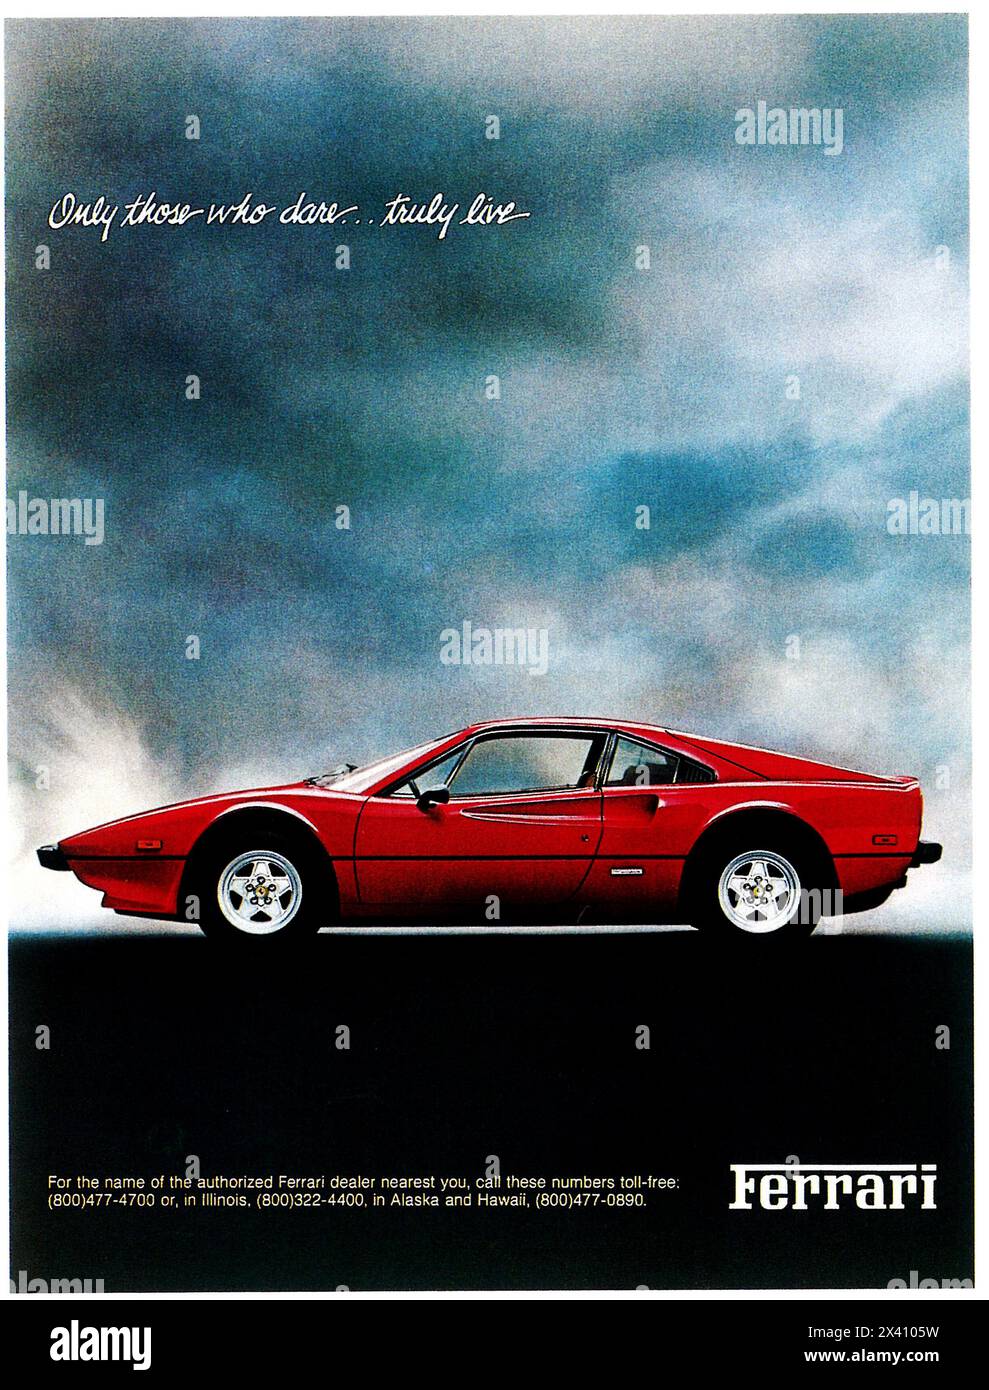 1981 Ferrari 308 ad Banque D'Images